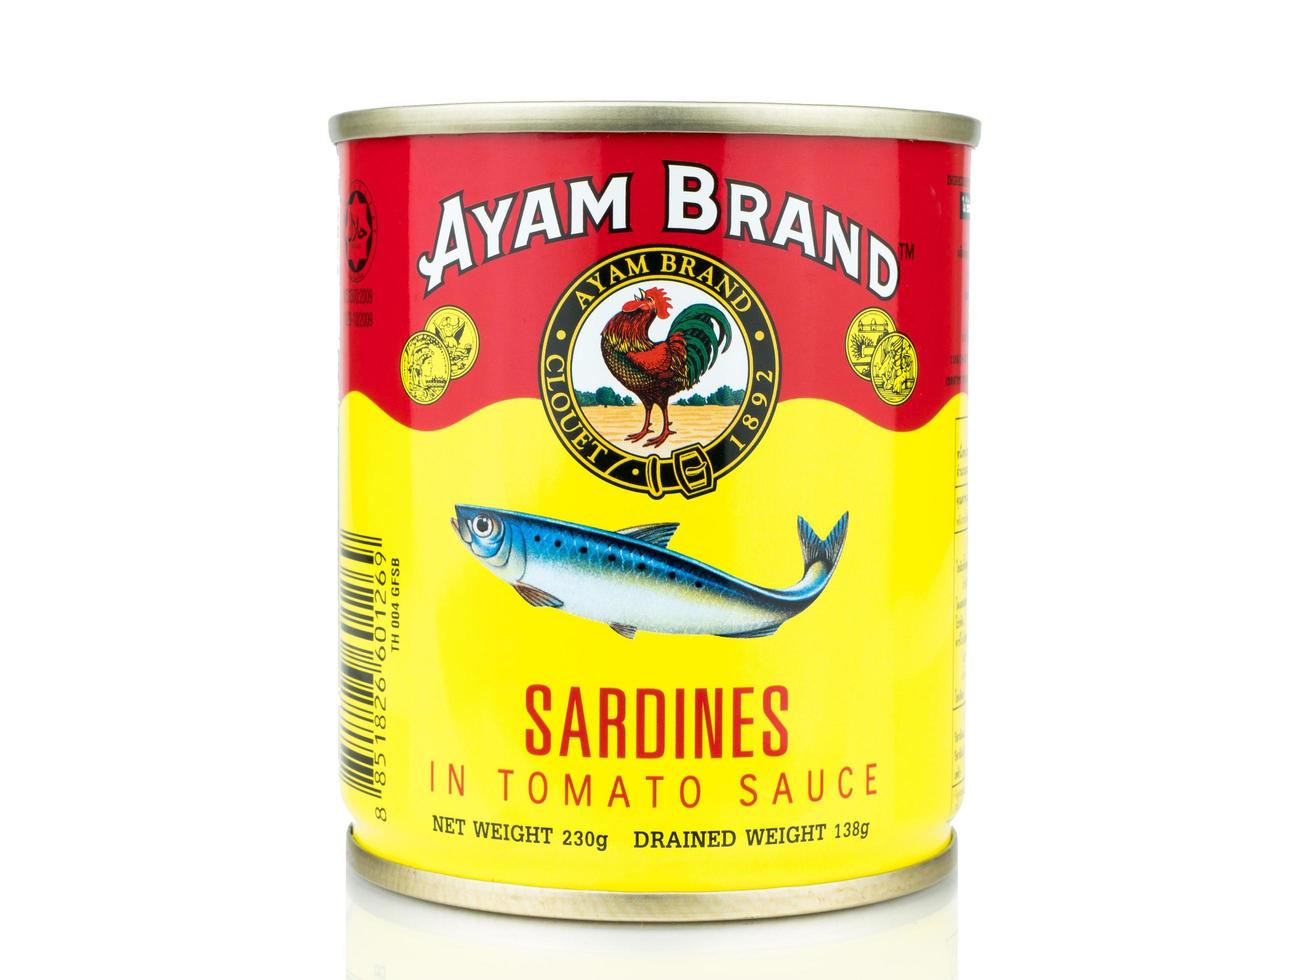 bangkok thailand - 30 januari 2019, redactionele foto blikje ayam merk sardines geïsoleerd op een witte achtergrond